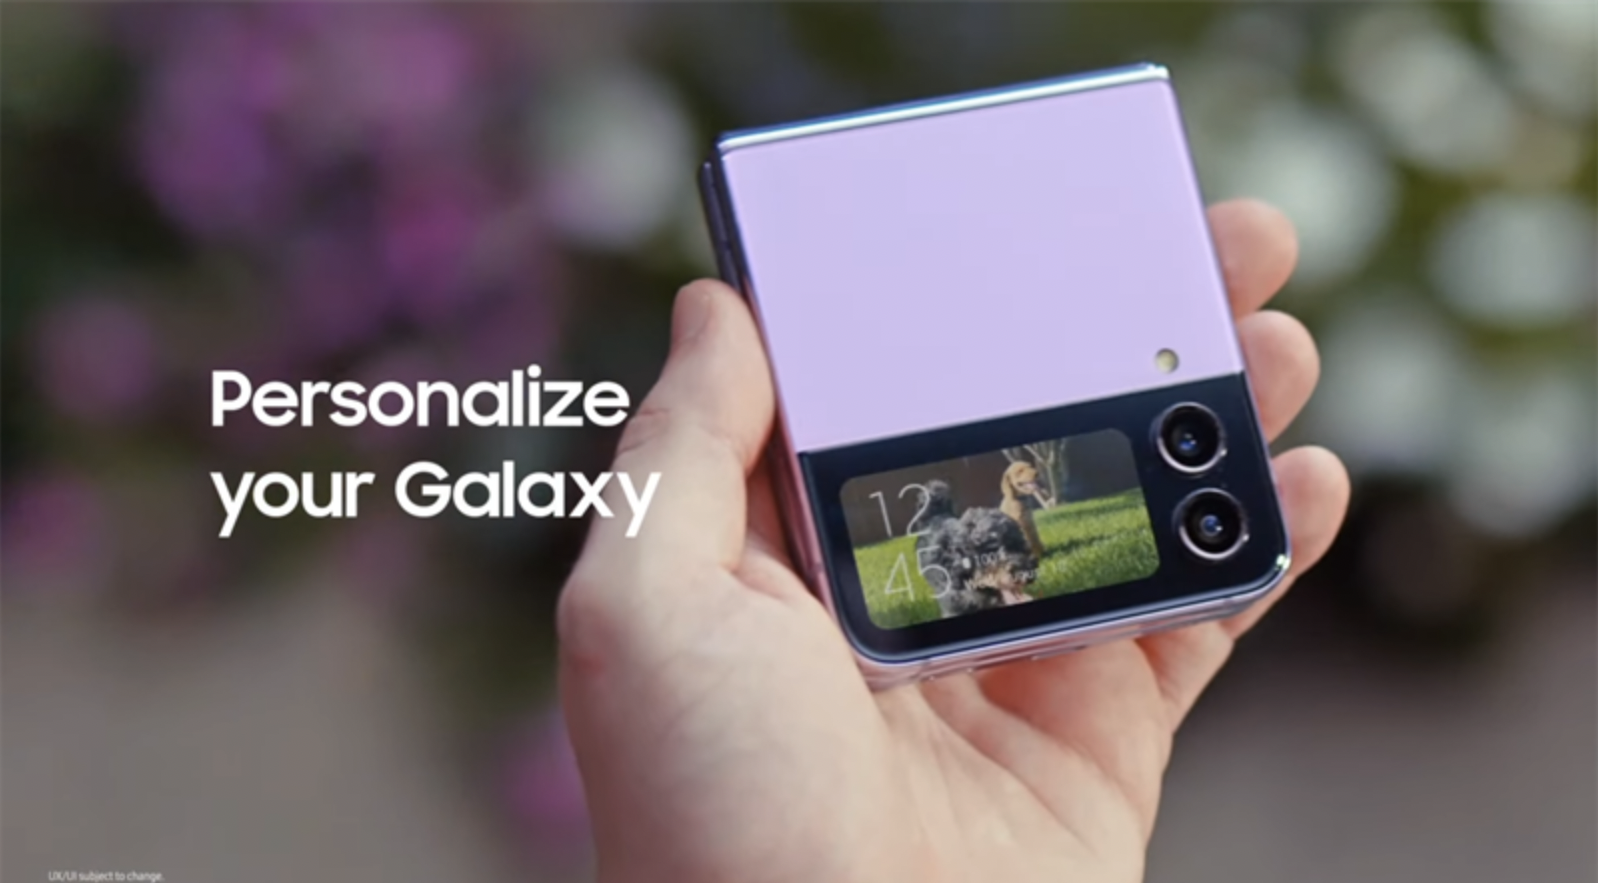 Với tính năng mới đầy bất ngờ trên Samsung Galaxy Z Flip 4, bạn sẽ được trải nghiệm những tính năng thông minh và tiện ích hơn bao giờ hết. Đăng nhập bằng vân tay, màn hình chính vuốt lên để mở khóa, chế độ quay video linh hoạt, chắc chắn sẽ khiến bạn thích thú.